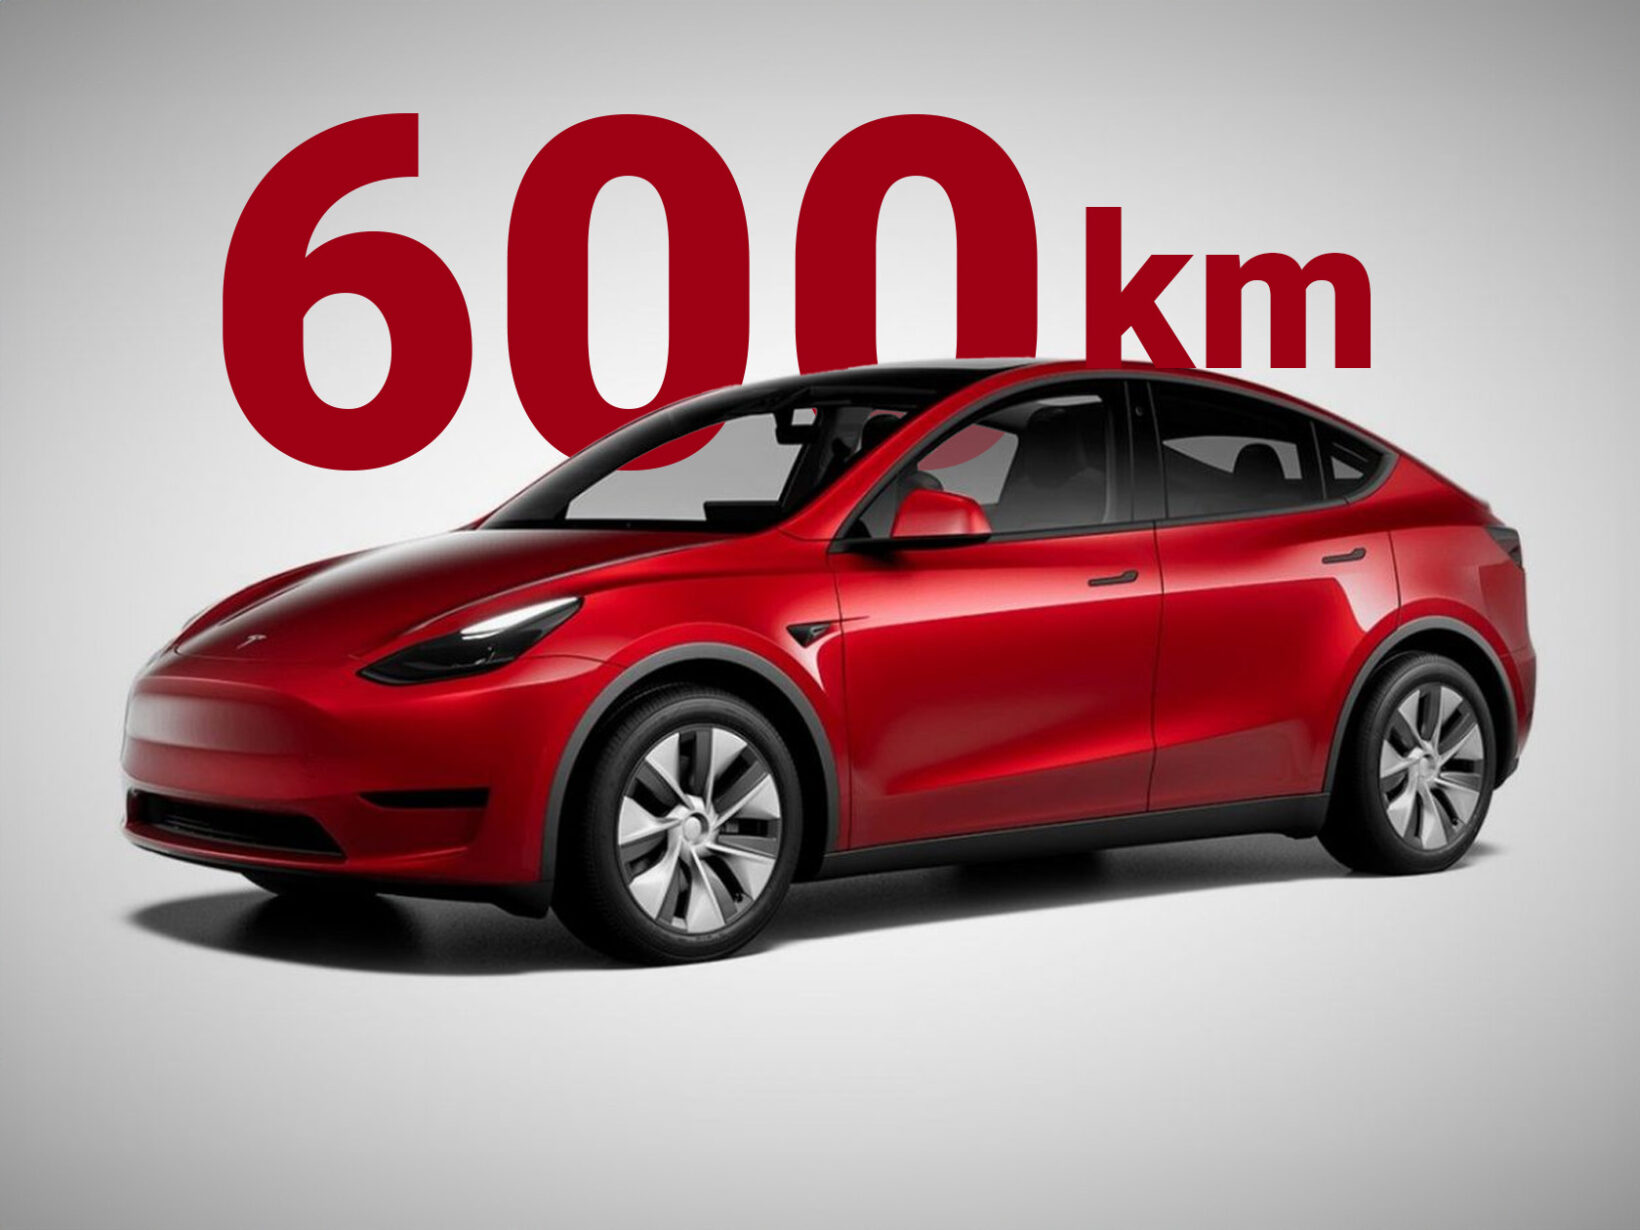 Le Tesla Model Y Grande Autonomie propulsion affiche 600 km d'autonomie WLTP